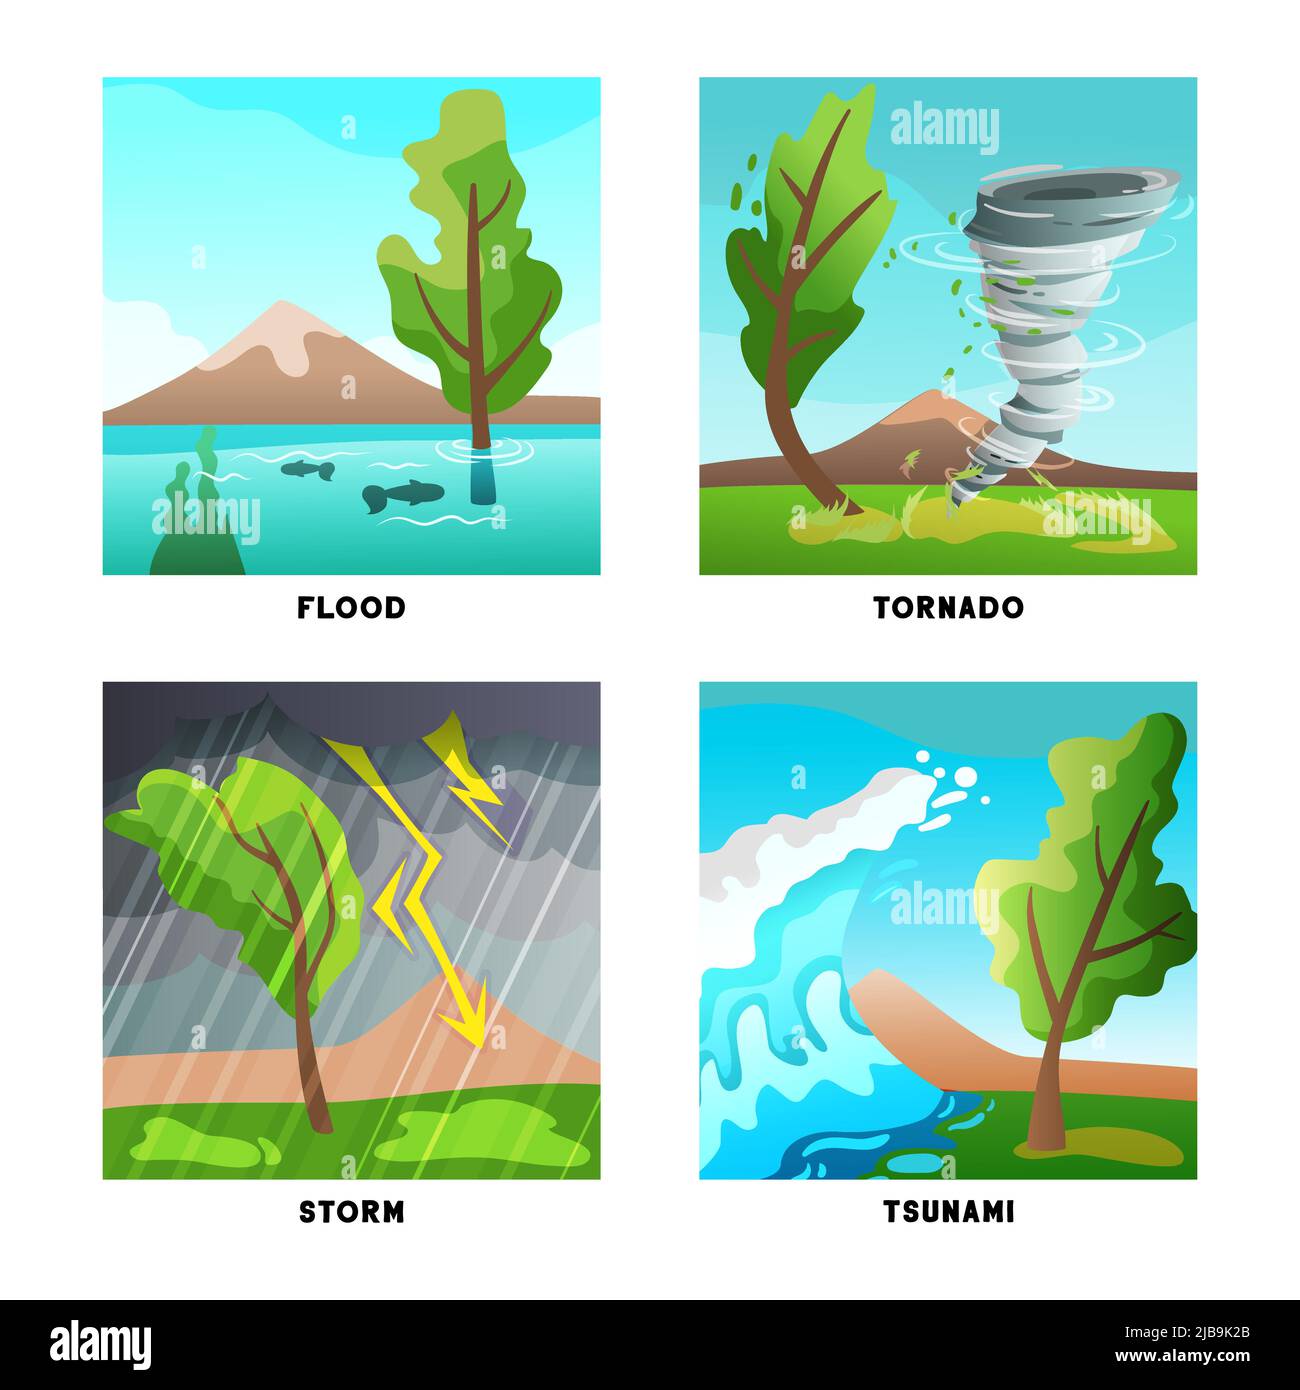 Catastrophes naturelles concept 4 compositions plates ensemble avec tempête inondation tornade et illustration de vecteur isolé d'onde de tsunami Illustration de Vecteur